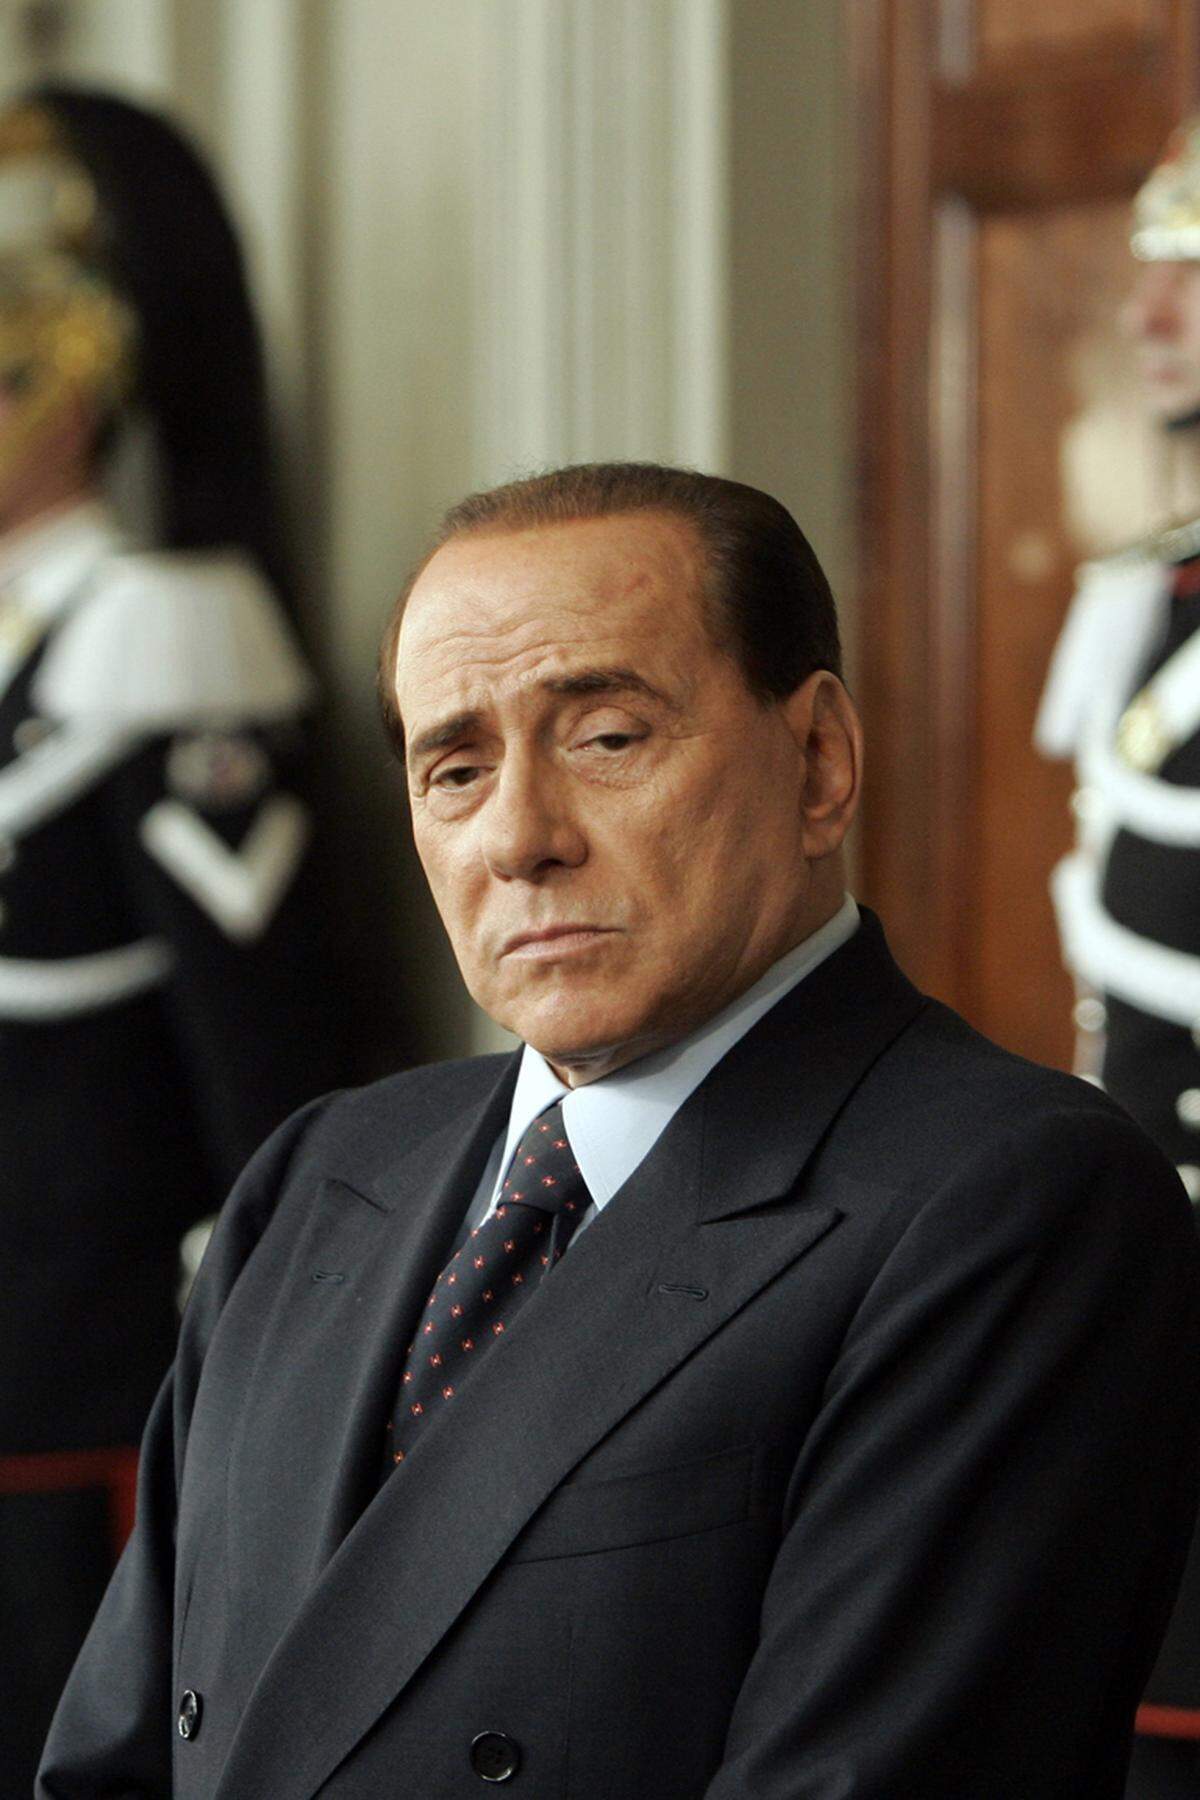 Bei dem Verfahren geht es um den Verdacht auf Betrug und Unterschlagung beim Kauf von Filmrechten für Berlusconis Medienkonzern Mediaset in den 1990er-Jahren. Berlusconi und rund einem Dutzend Mitangeklagten werden unter anderem Bilanzfälschung und Steuerbetrug vorgeworfen. Mediaset soll Filmrechte über Firmen in Steueroasen gekauft haben. Den italienischen Finanzbehörden sollen überhöhte Kaufpreise angegeben worden sein, um Steuern zu sparen.